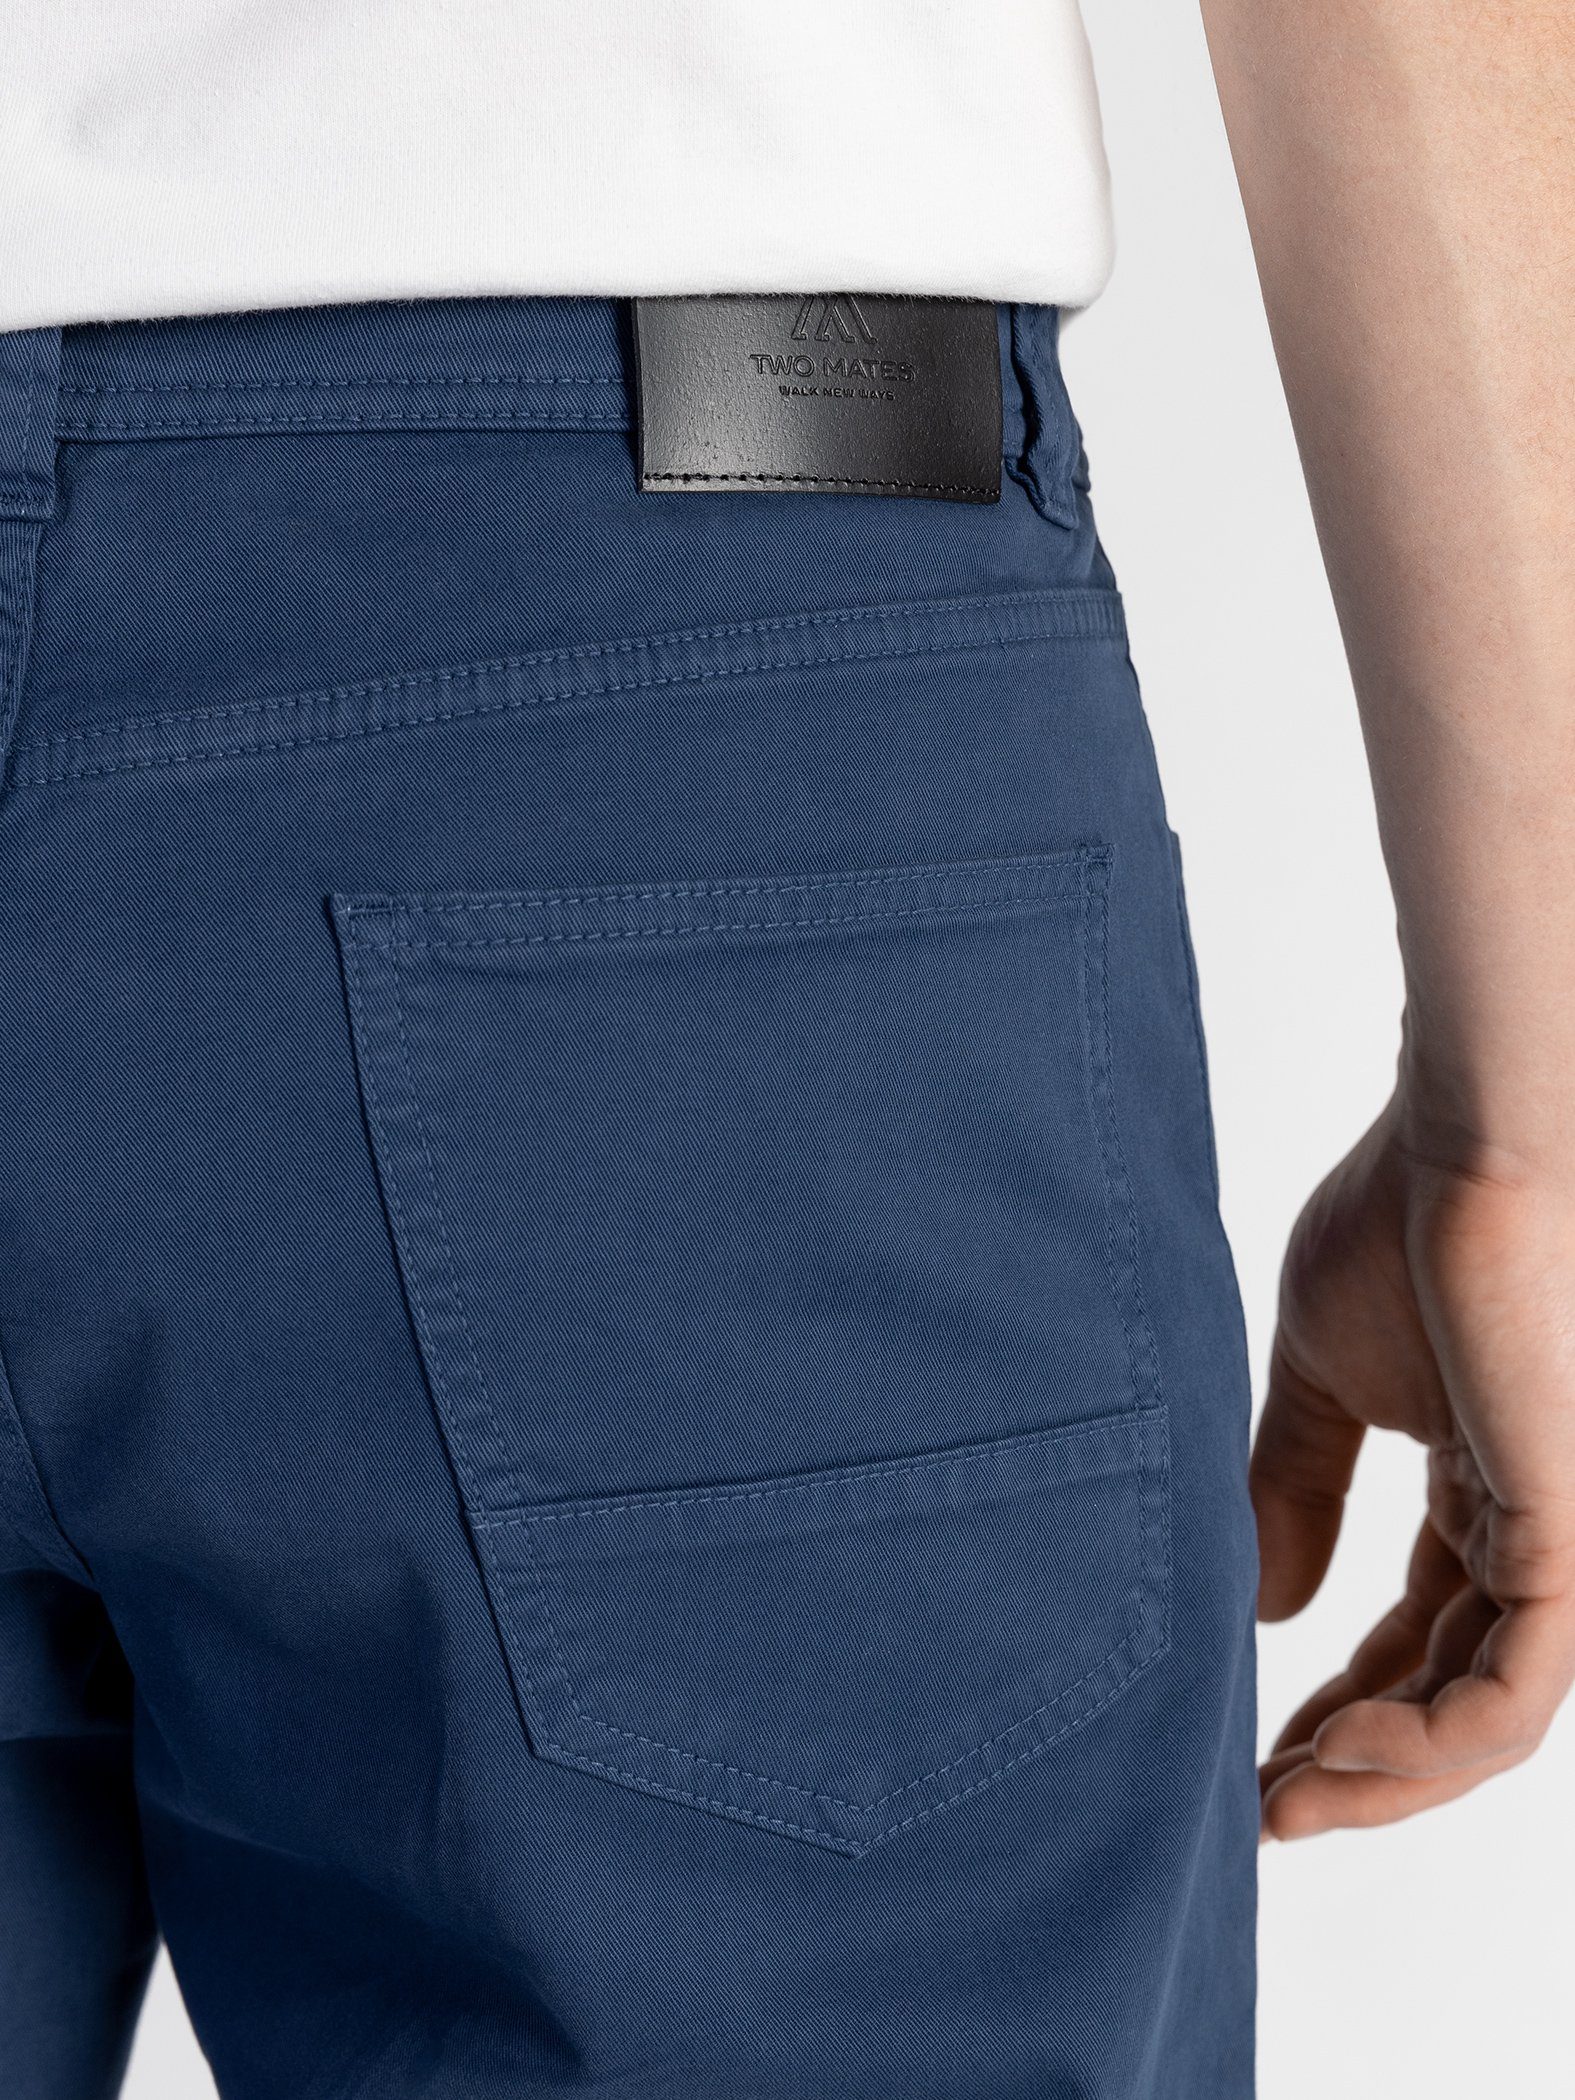 GOTS-zertifiziert Blau 5-Pocket elastischem mit Stoffhose Bund, TwoMates Farbauswahl,